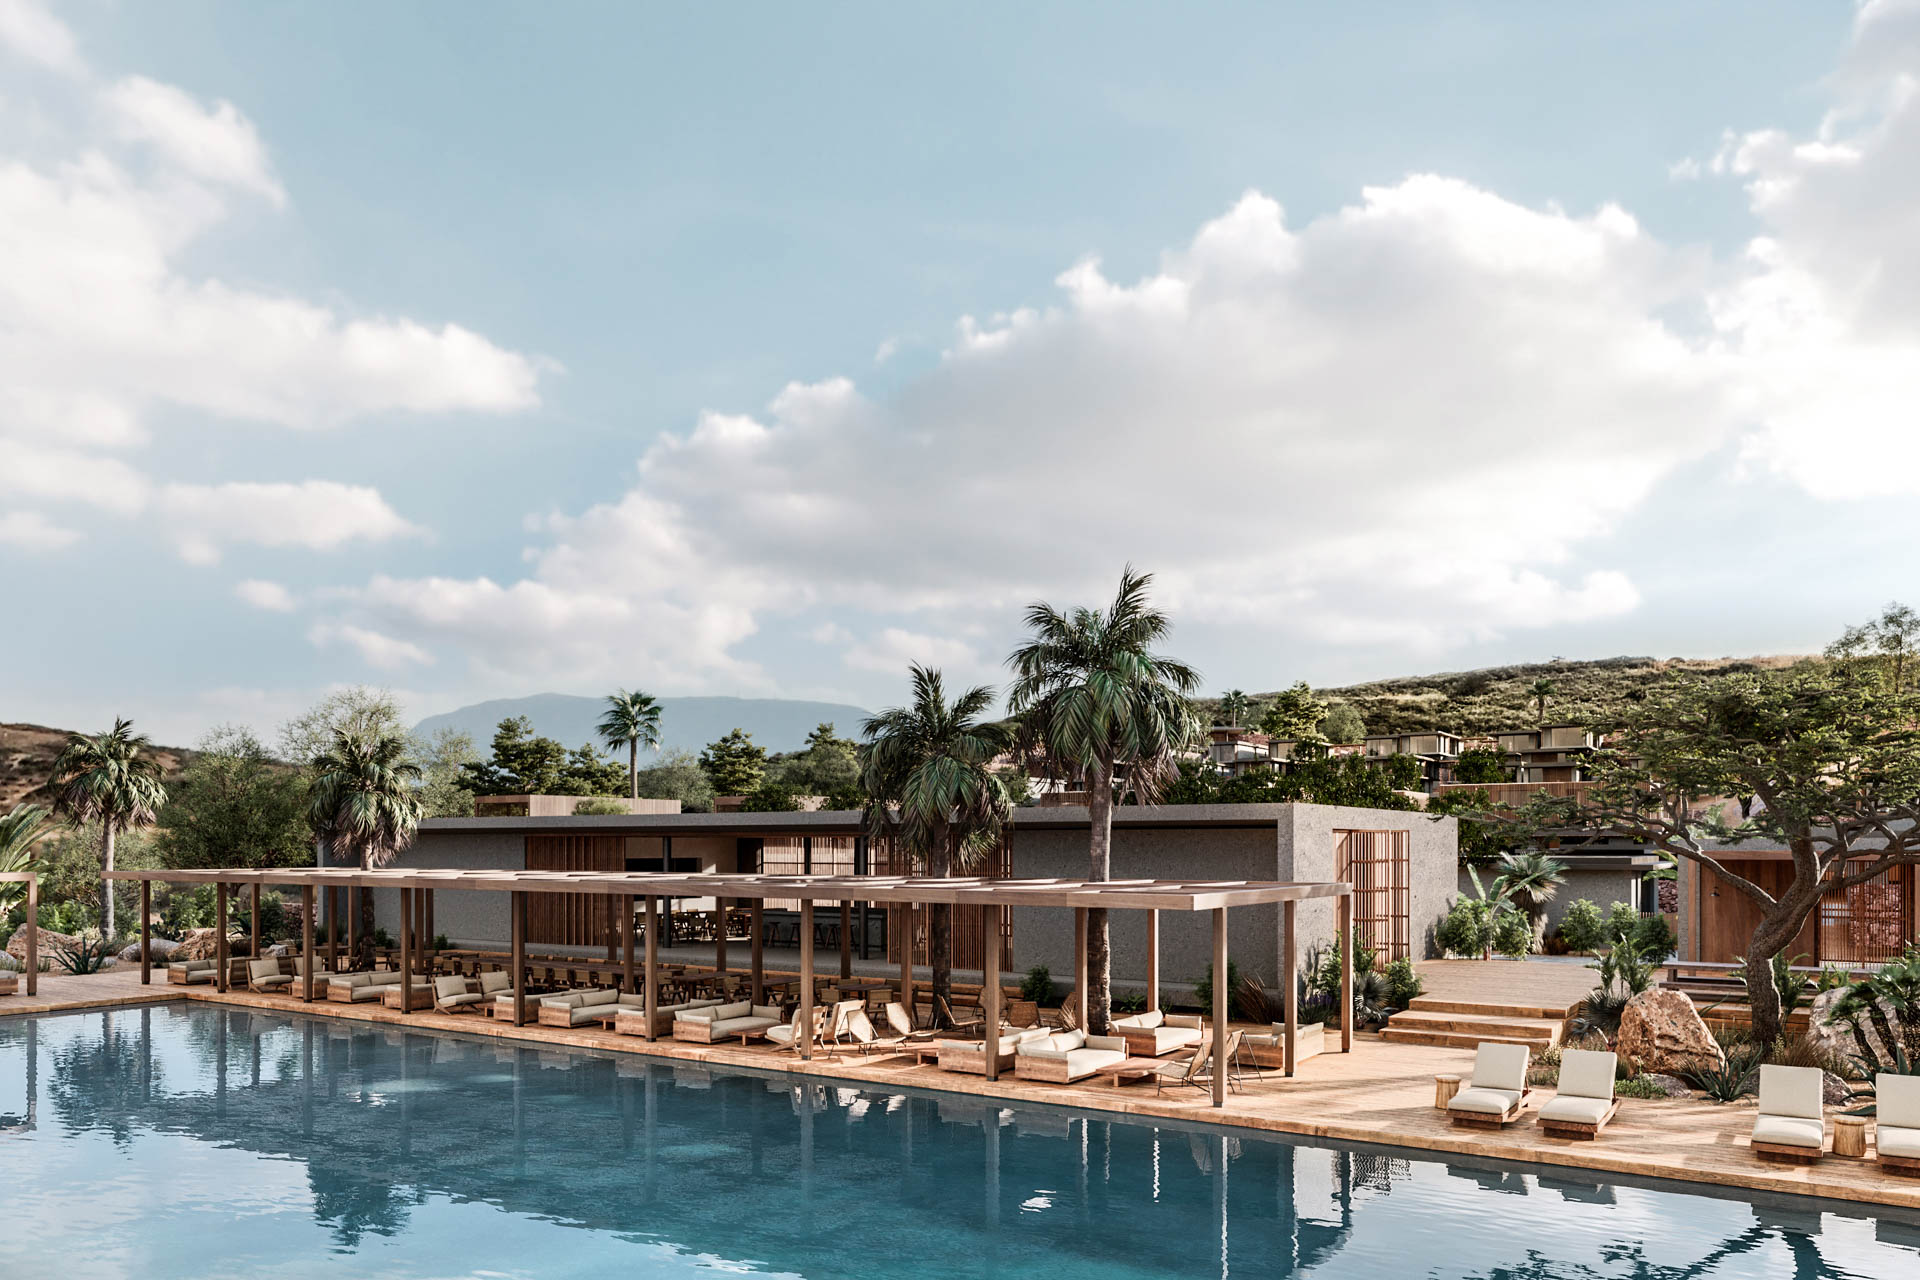 Casa Cook Chania - Creta - Grécia - Hotel and Resort